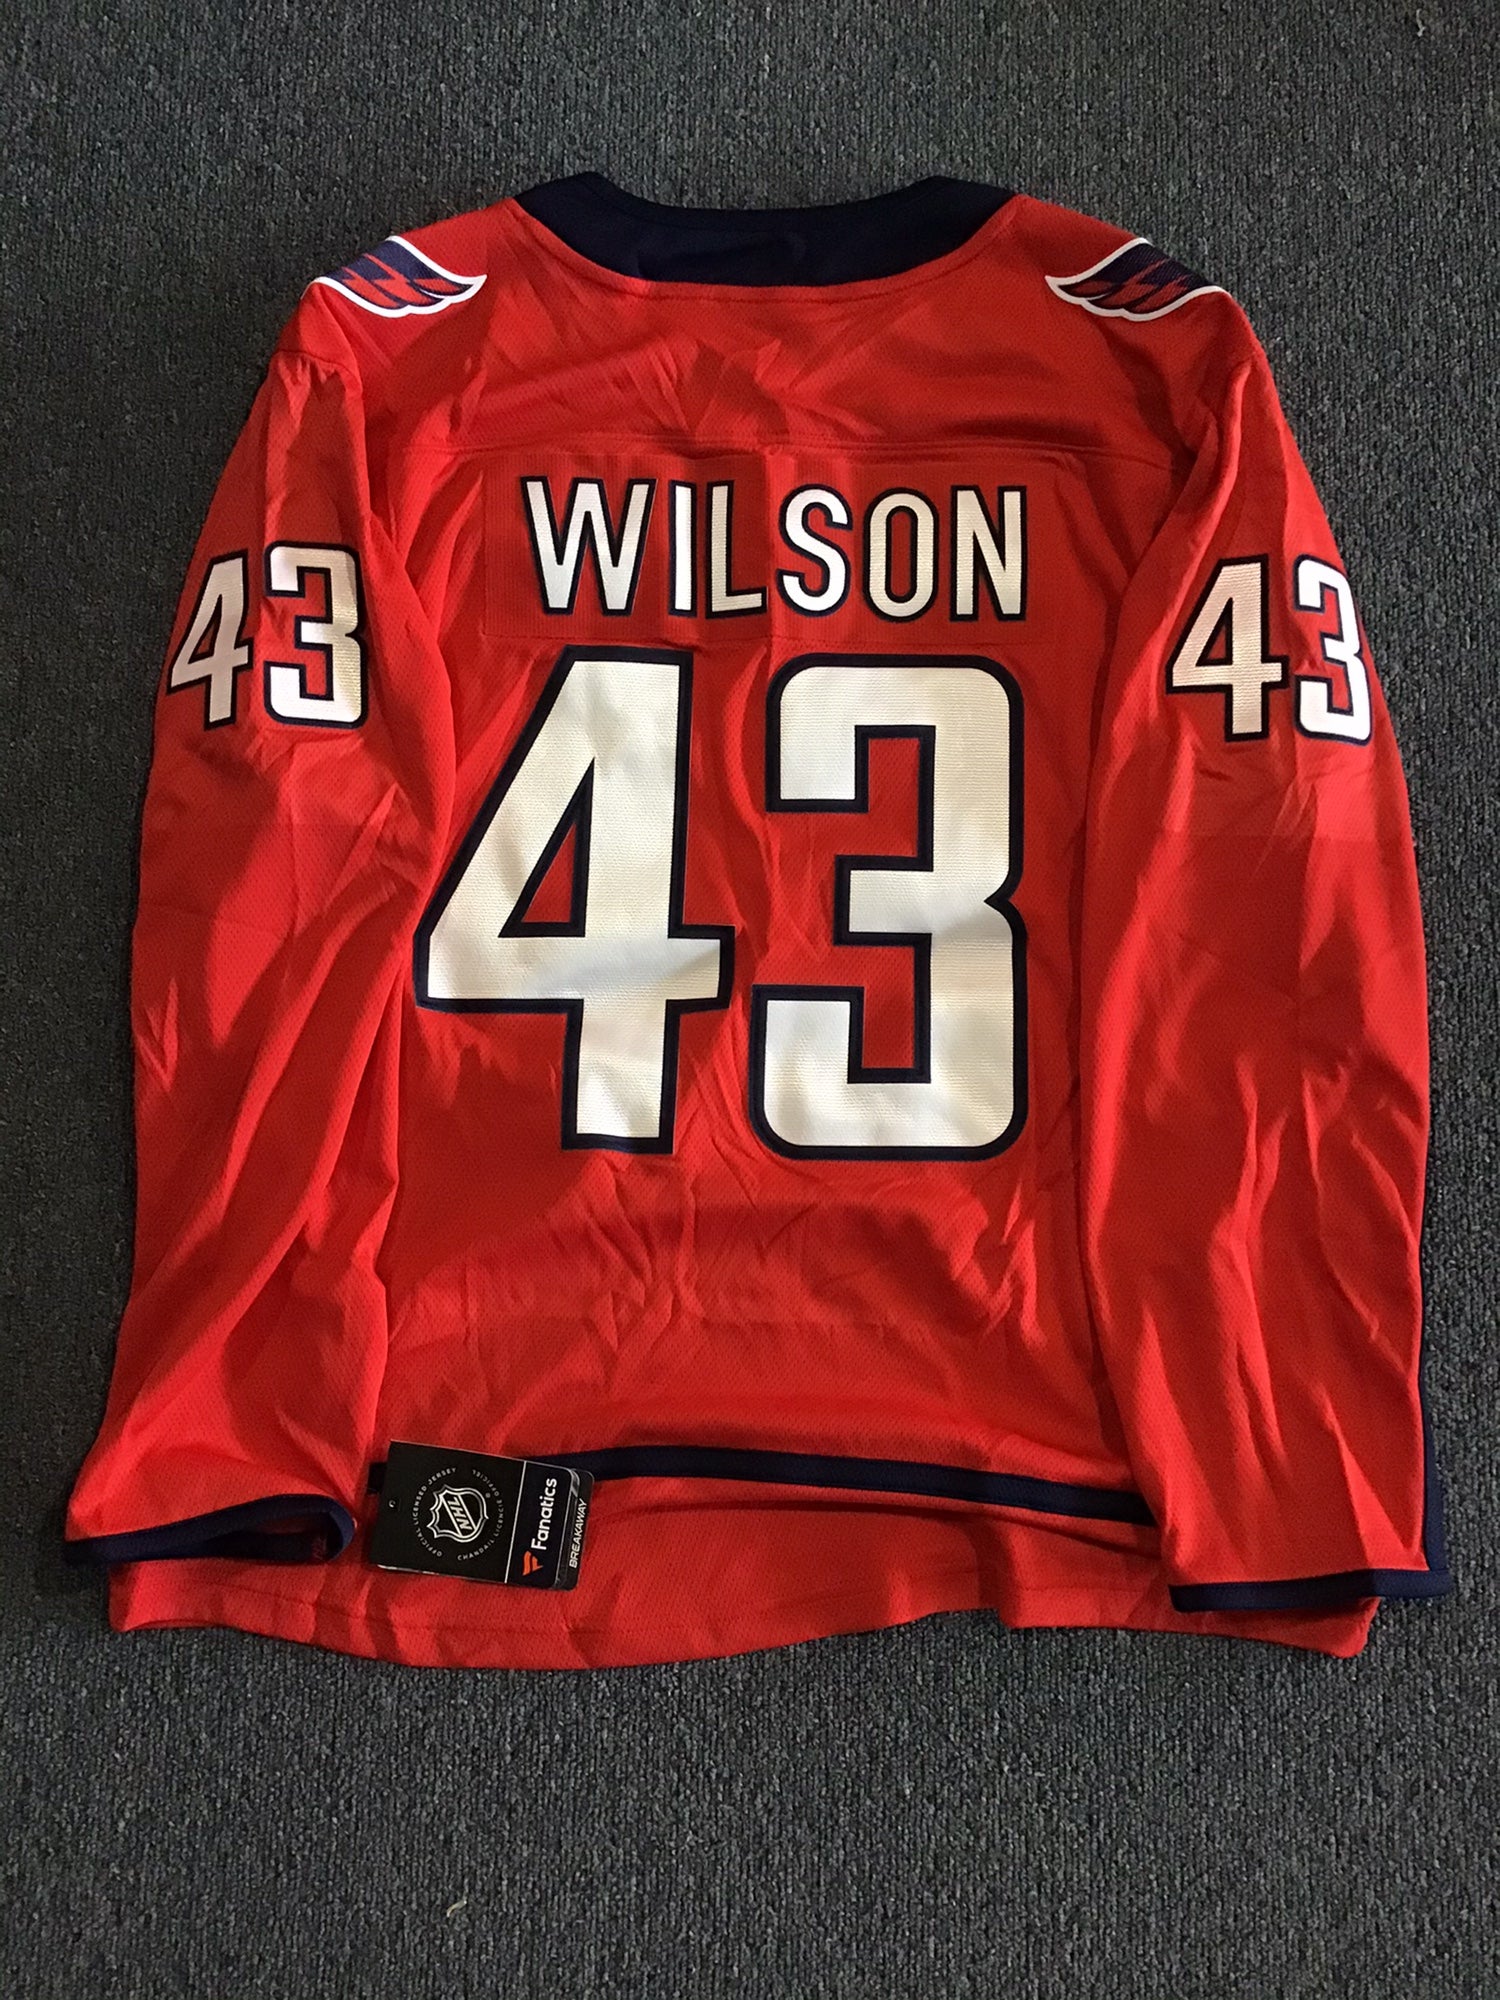 NWT Washington Capitals Youth L/XL Fanatics Jersey #43 Wilson